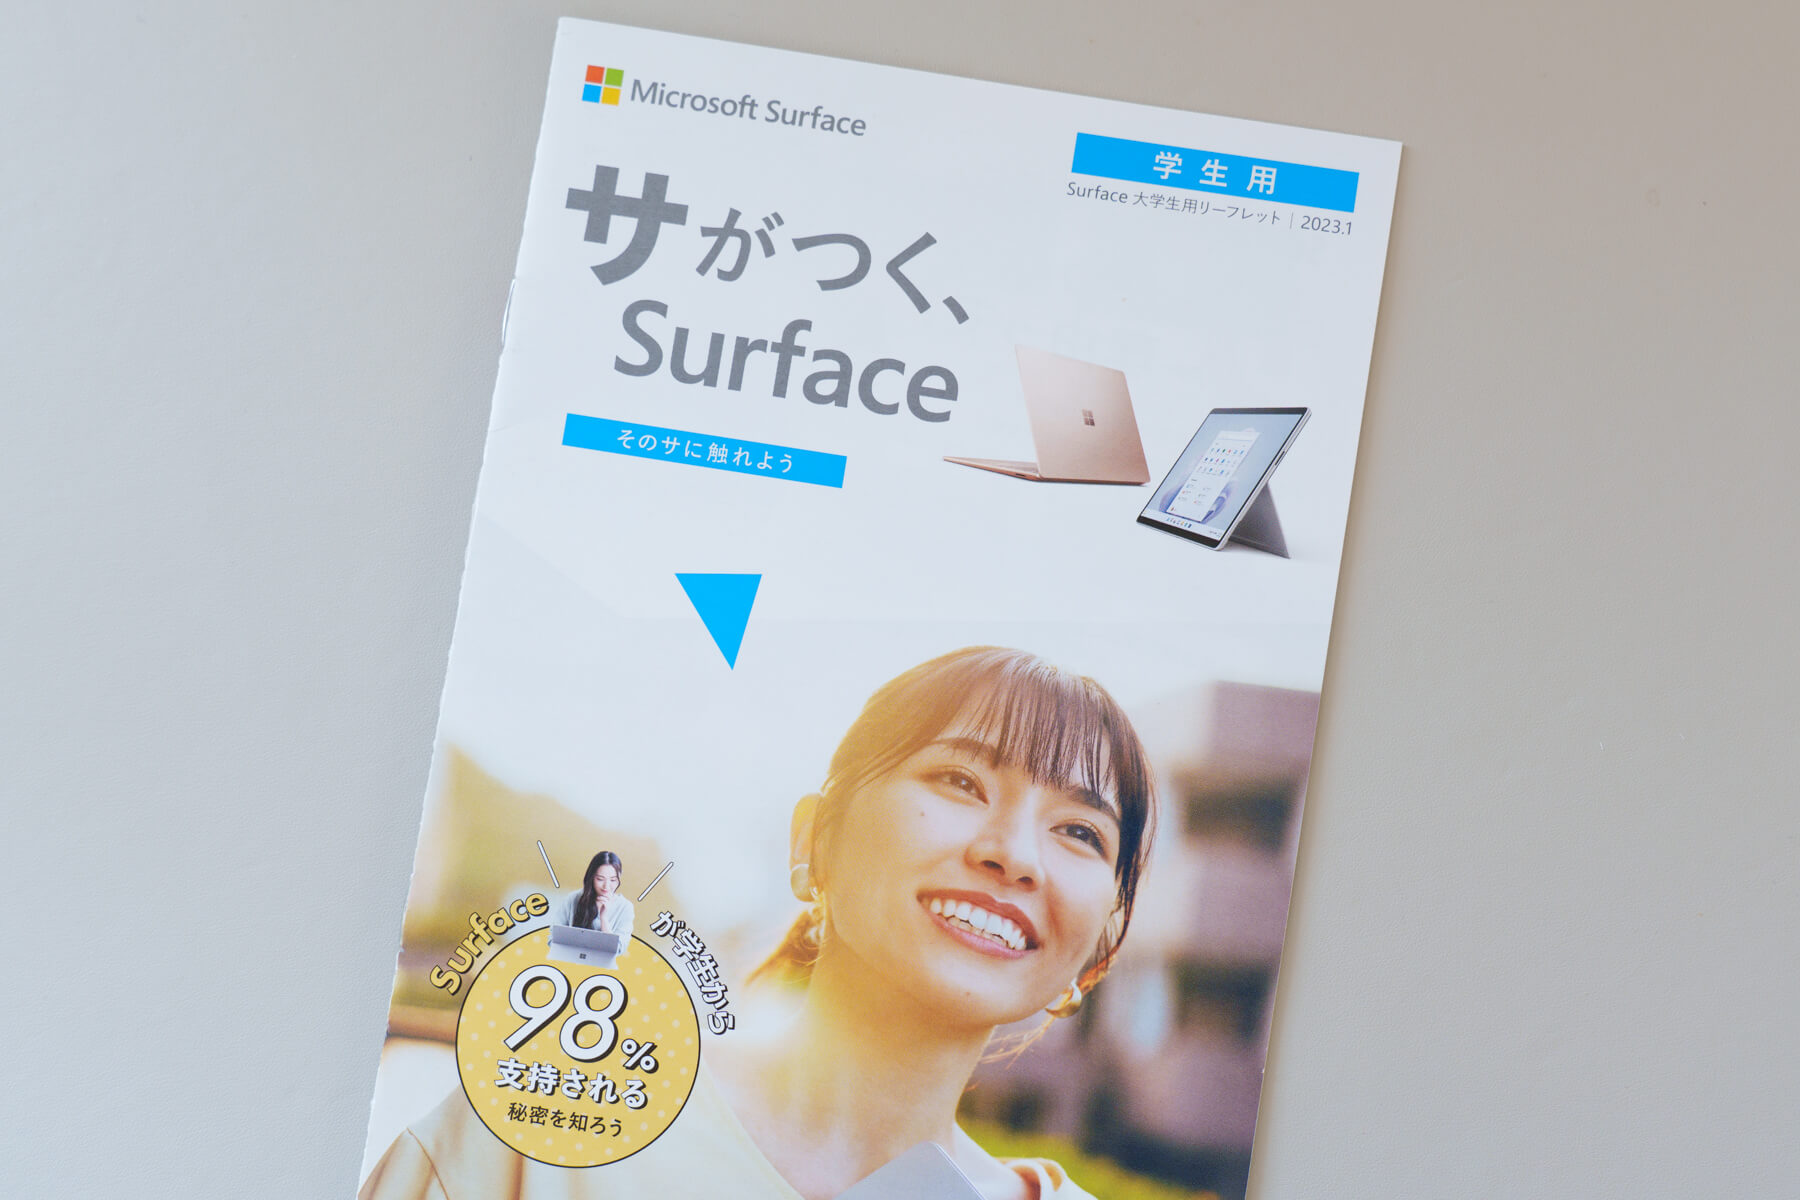 正規代理店配布されている「サがつく、Surface」の冊子